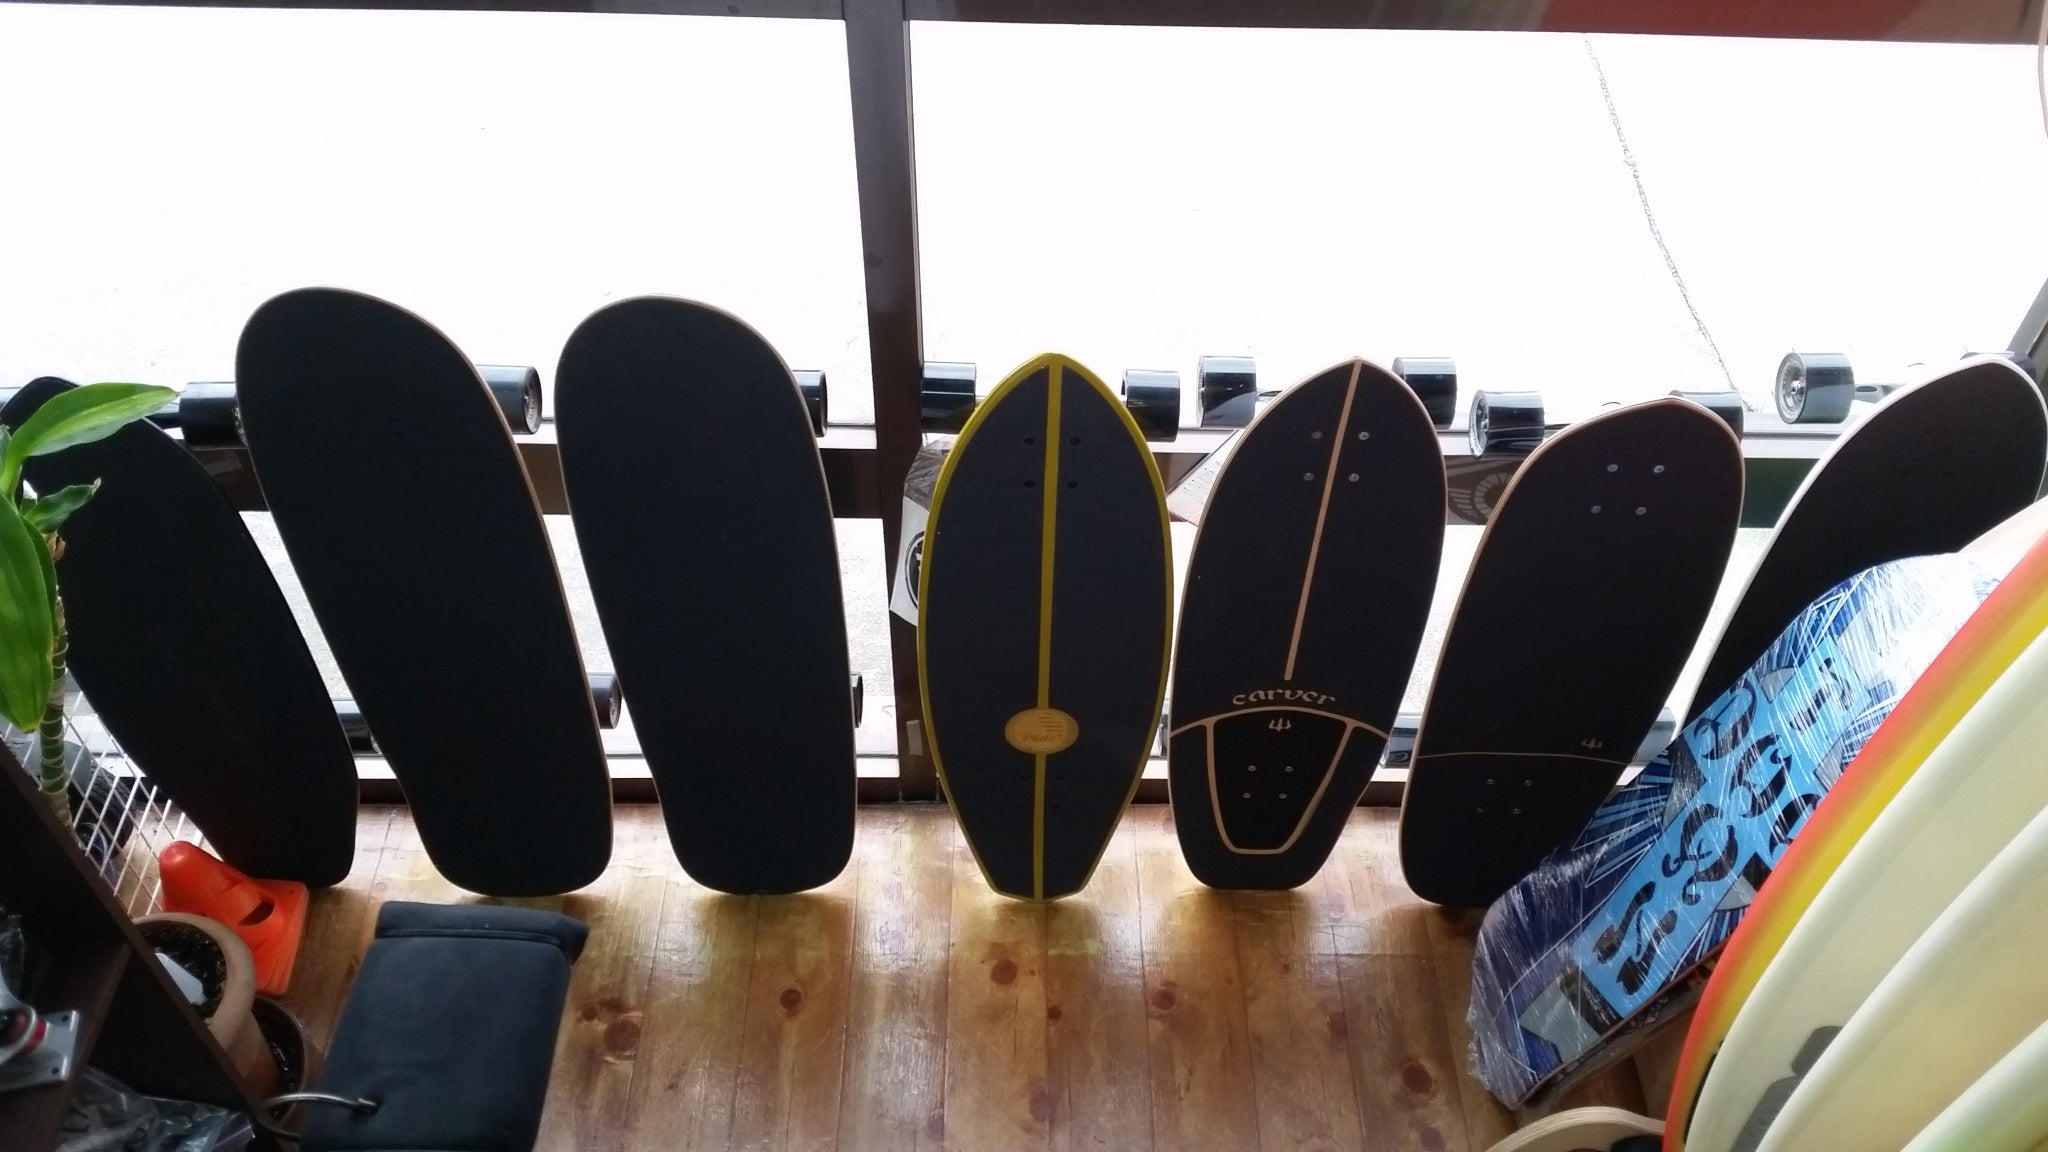 Surf Skate サーフショップ ノーレッジボードチョイス 菊地 Shin 信次のブログ